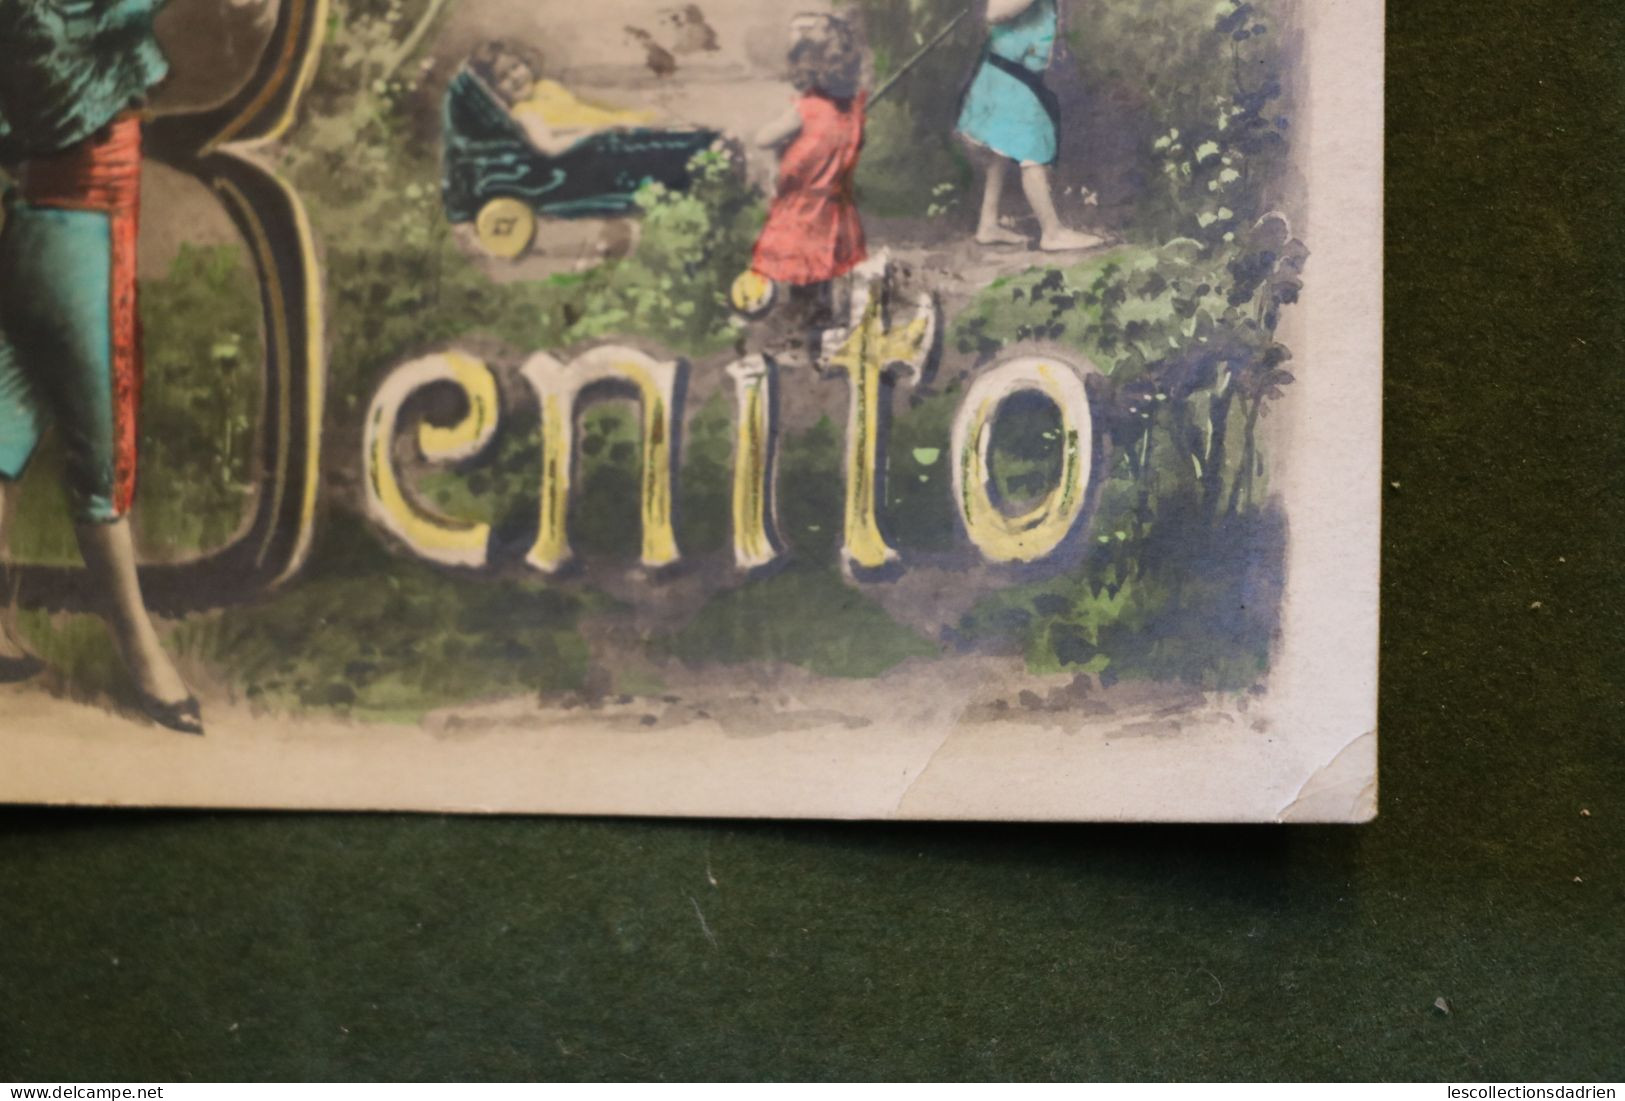 Carte postale fantaisie - Benito - enfants landeau  - envoyée au 3e lanciers à Bruges